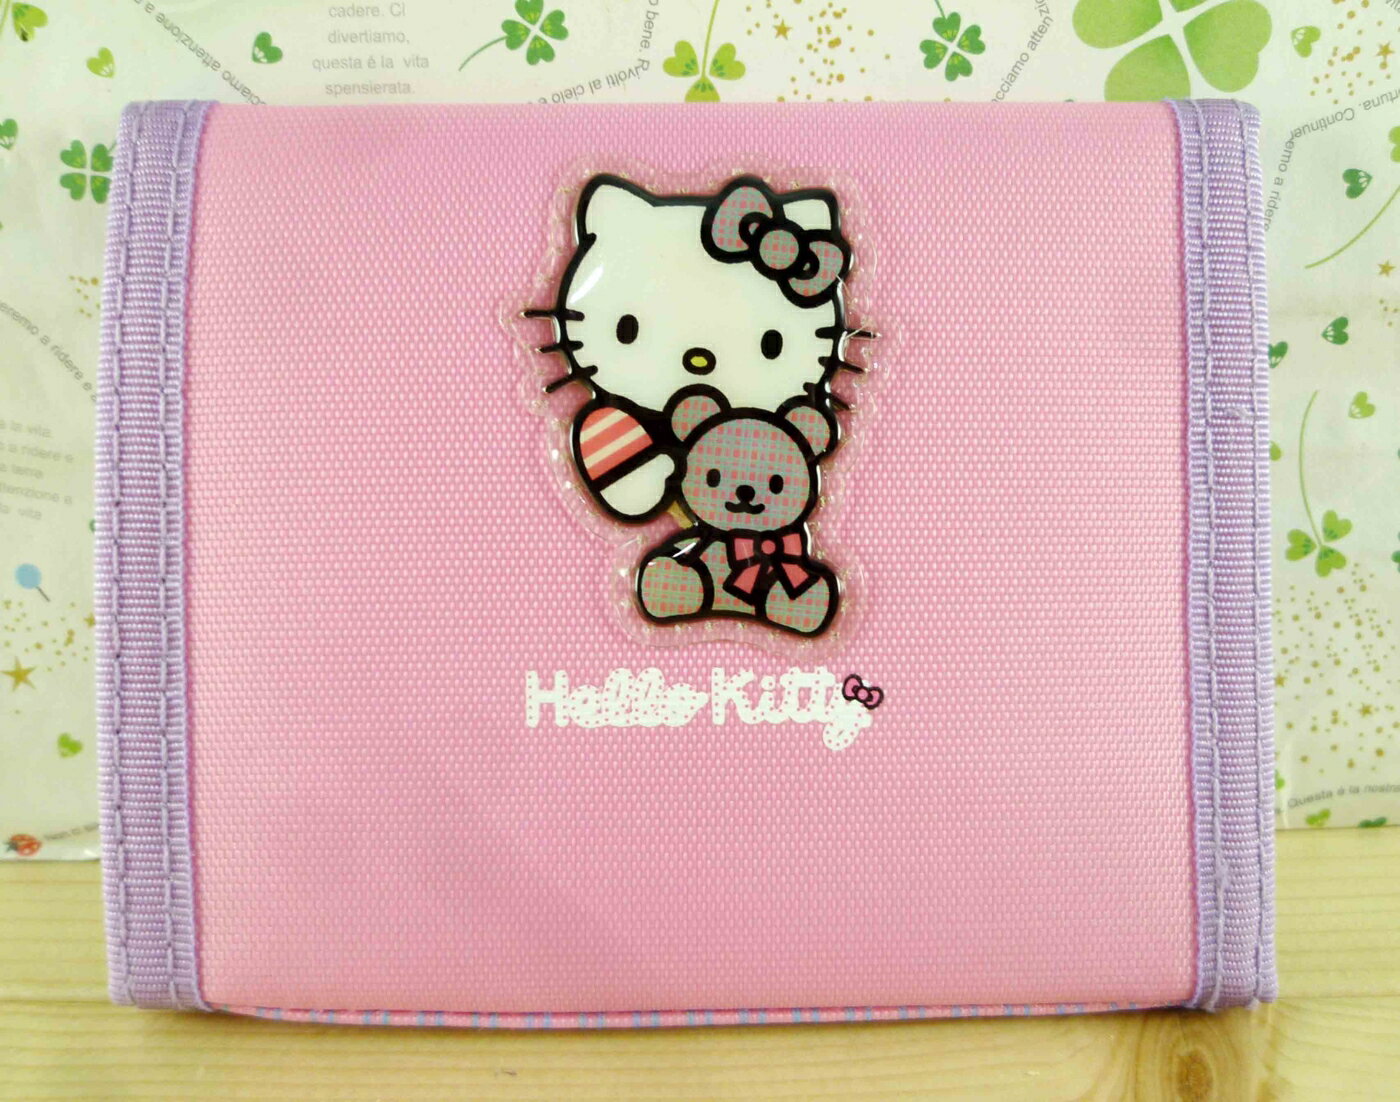 【震撼精品百貨】Hello Kitty 凱蒂貓-凱蒂貓皮夾/短夾-KITTY抱熊圖案-粉紫色 震撼日式精品百貨